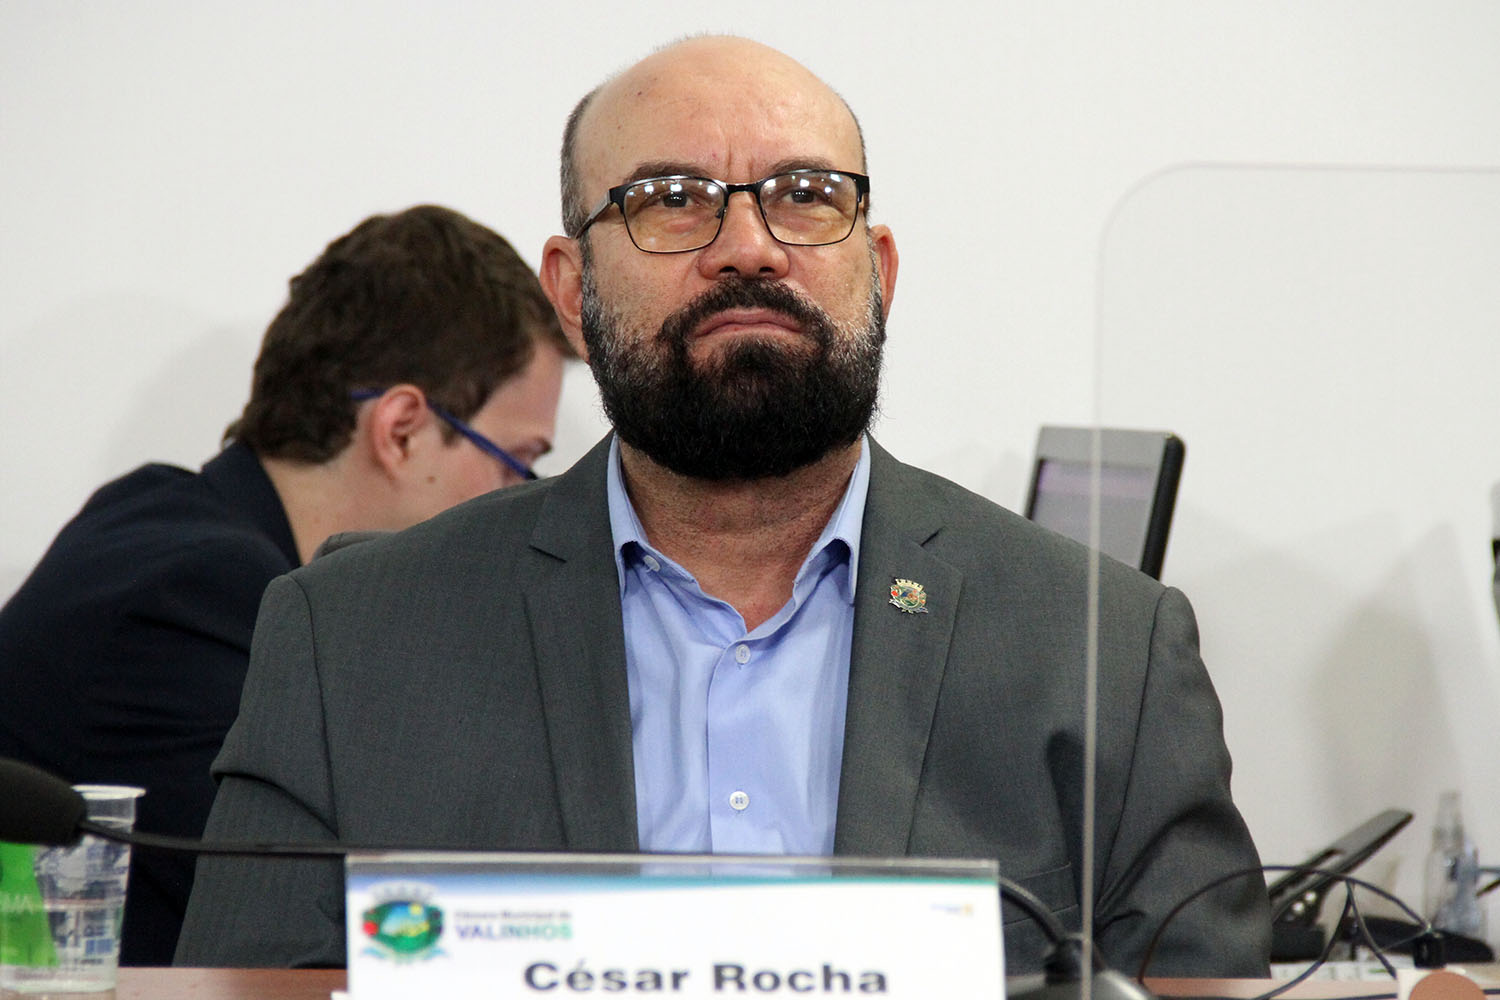 #PraCegoVer: foto mostra o vereador César Rocha em seu lugar no plenário, acompanhando a sessão ordinária.